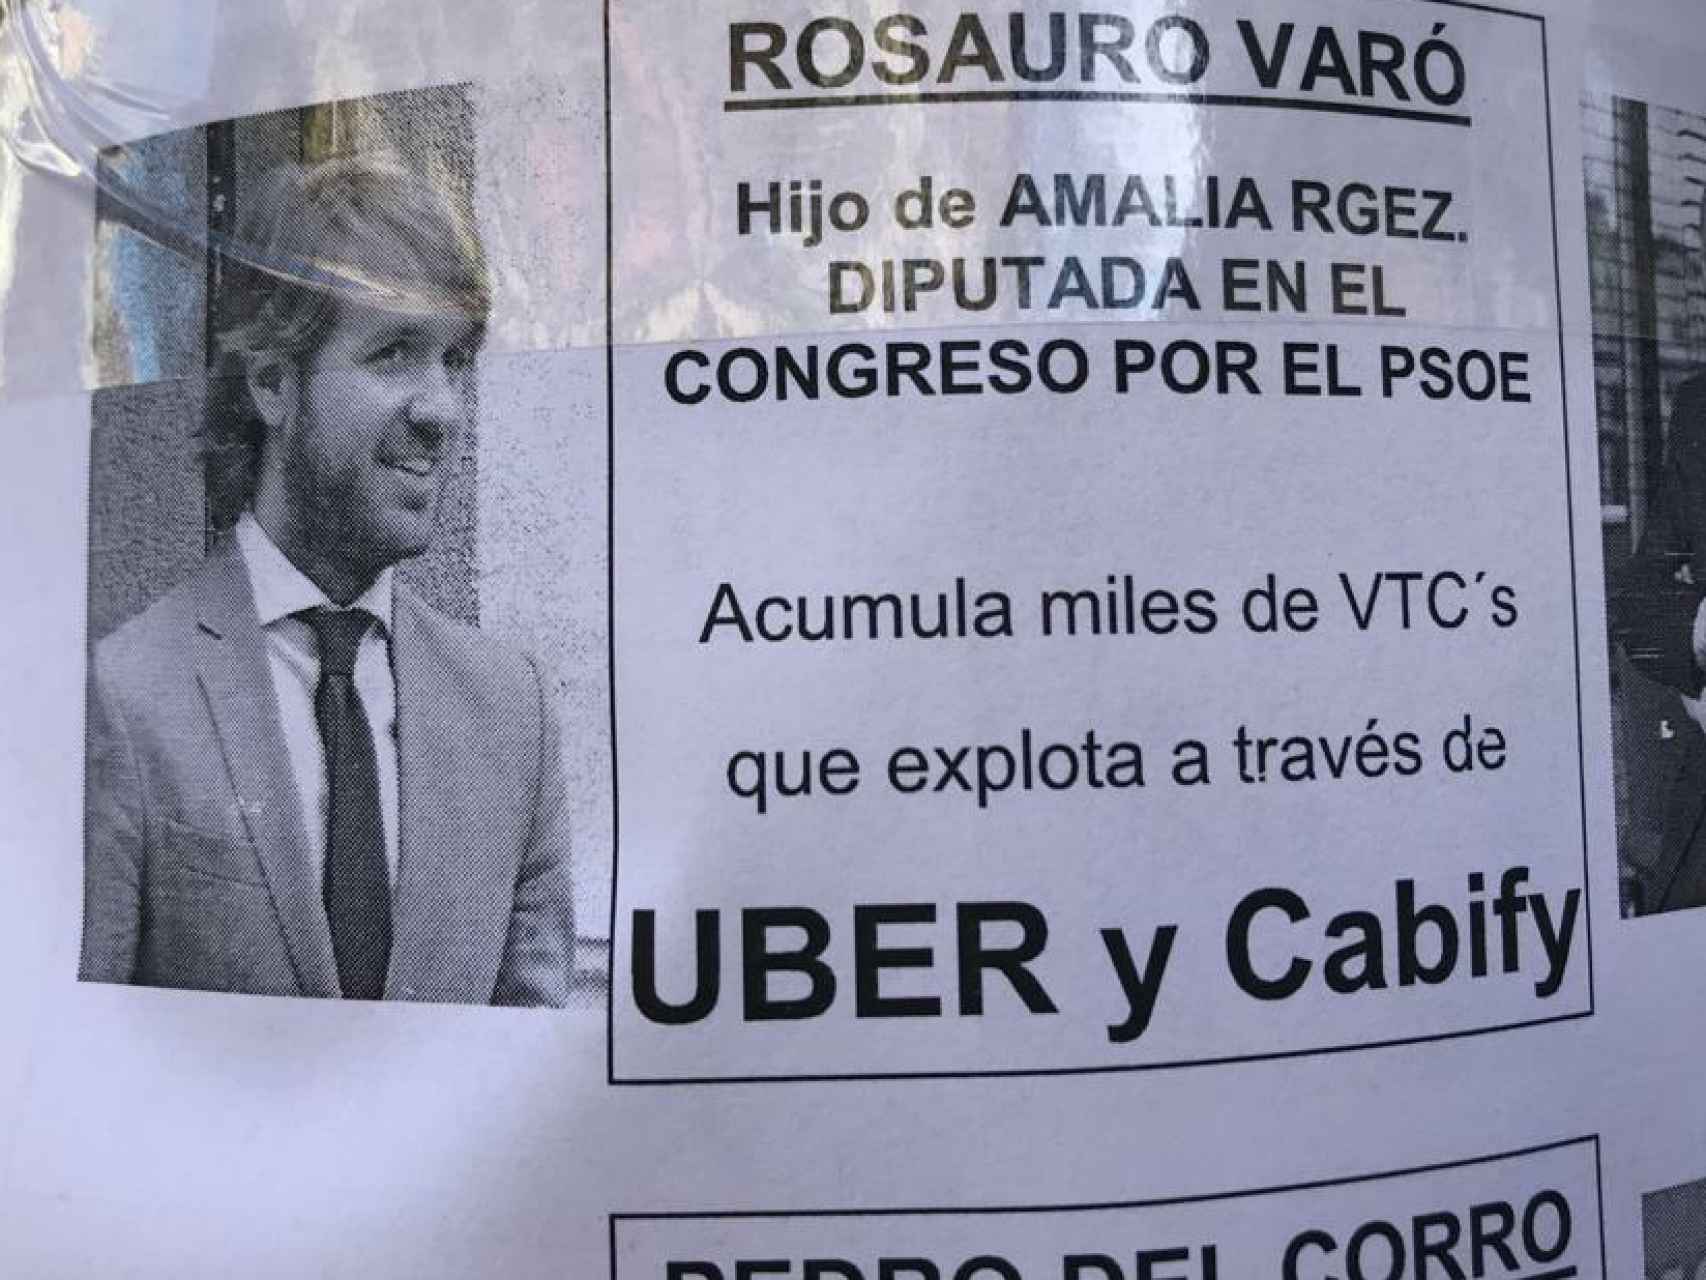 El cartel en el que aparece el nombre de Rosauro Varo.